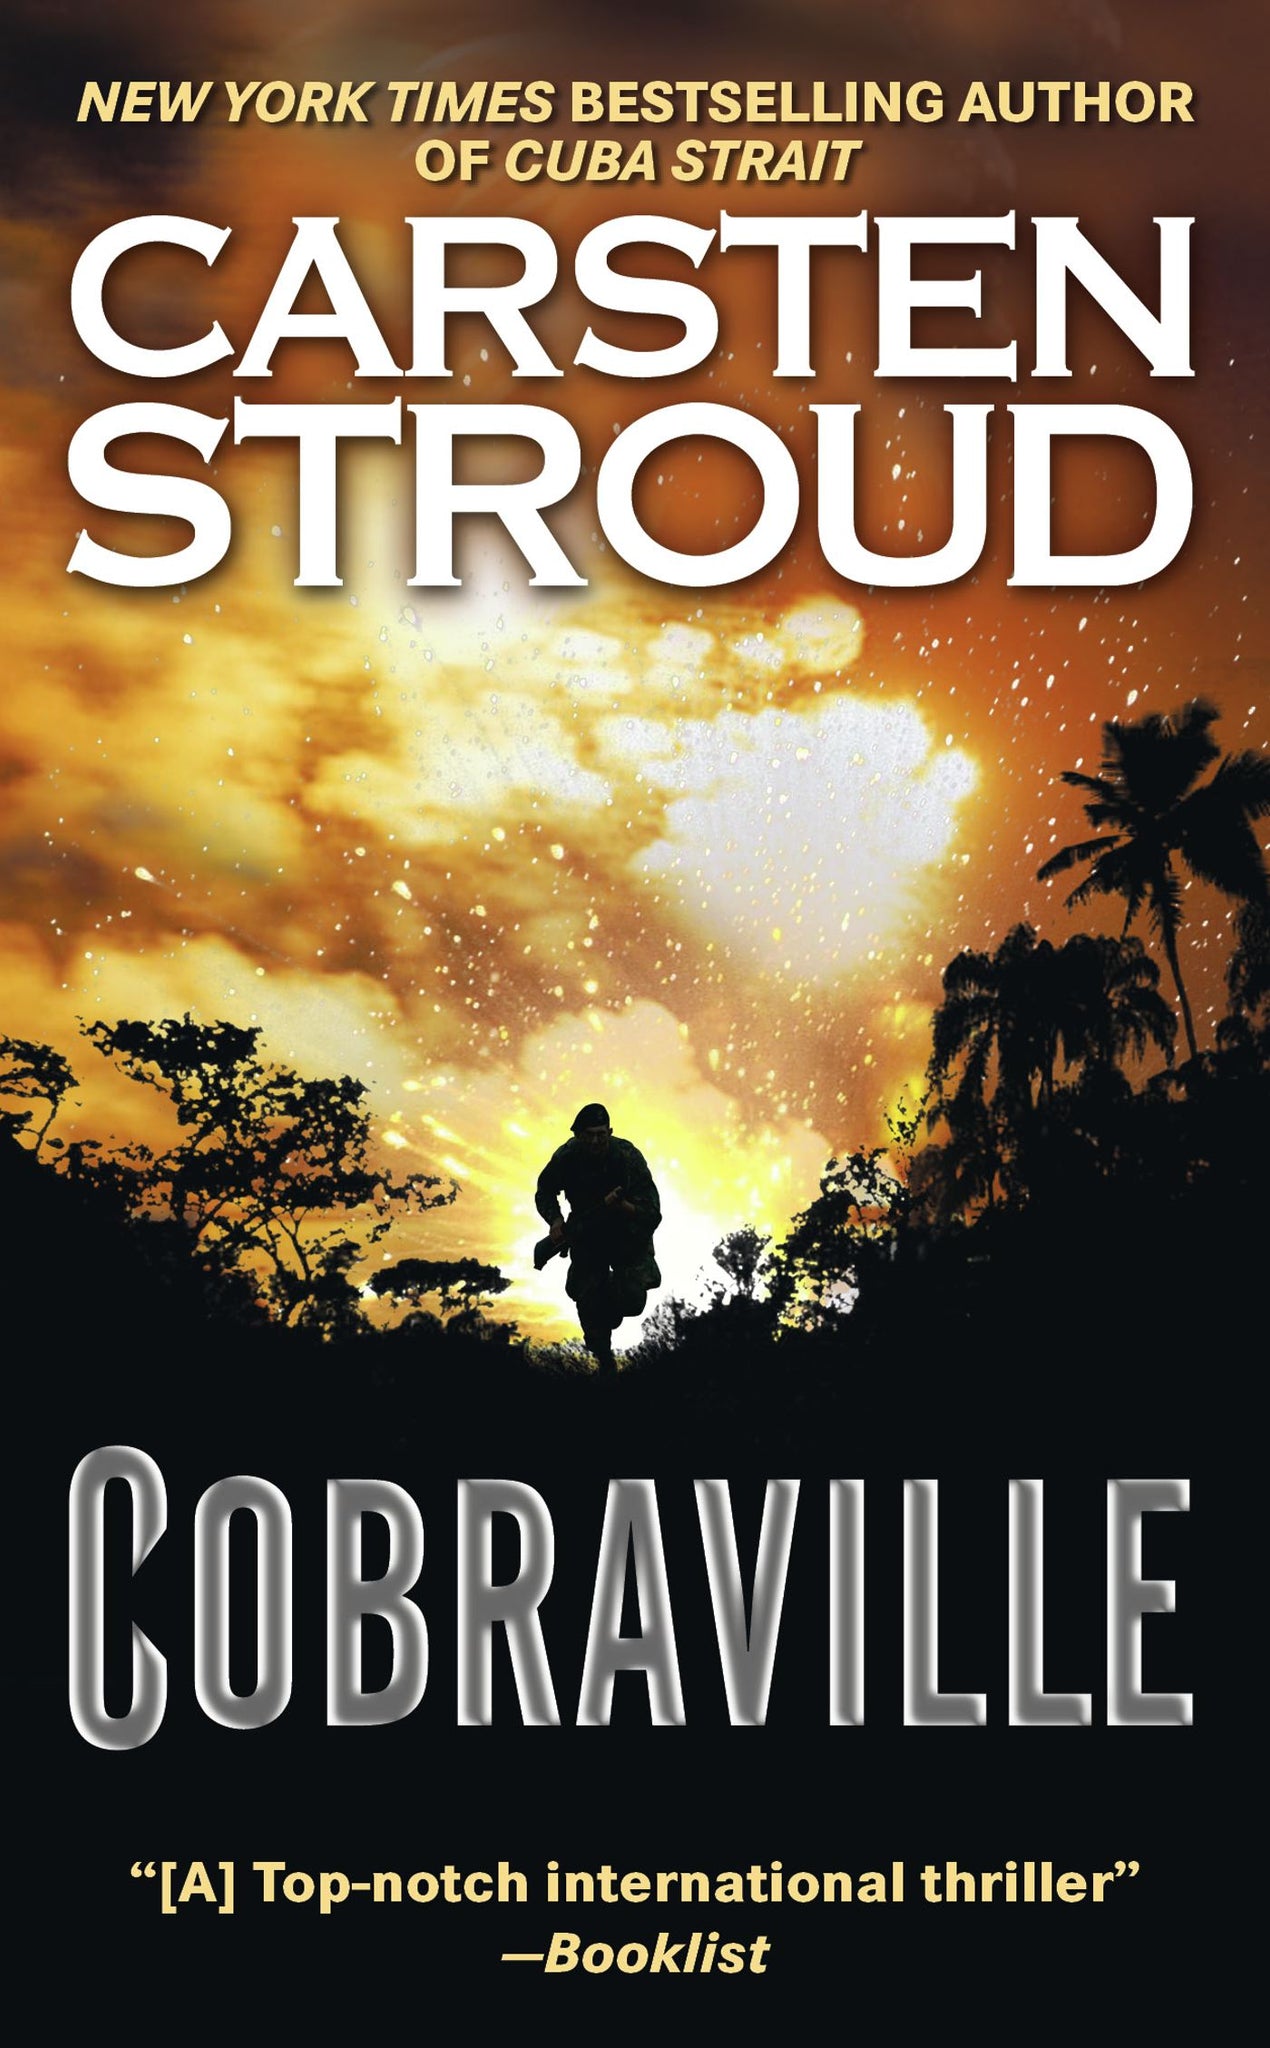 Cobraville : A Novel